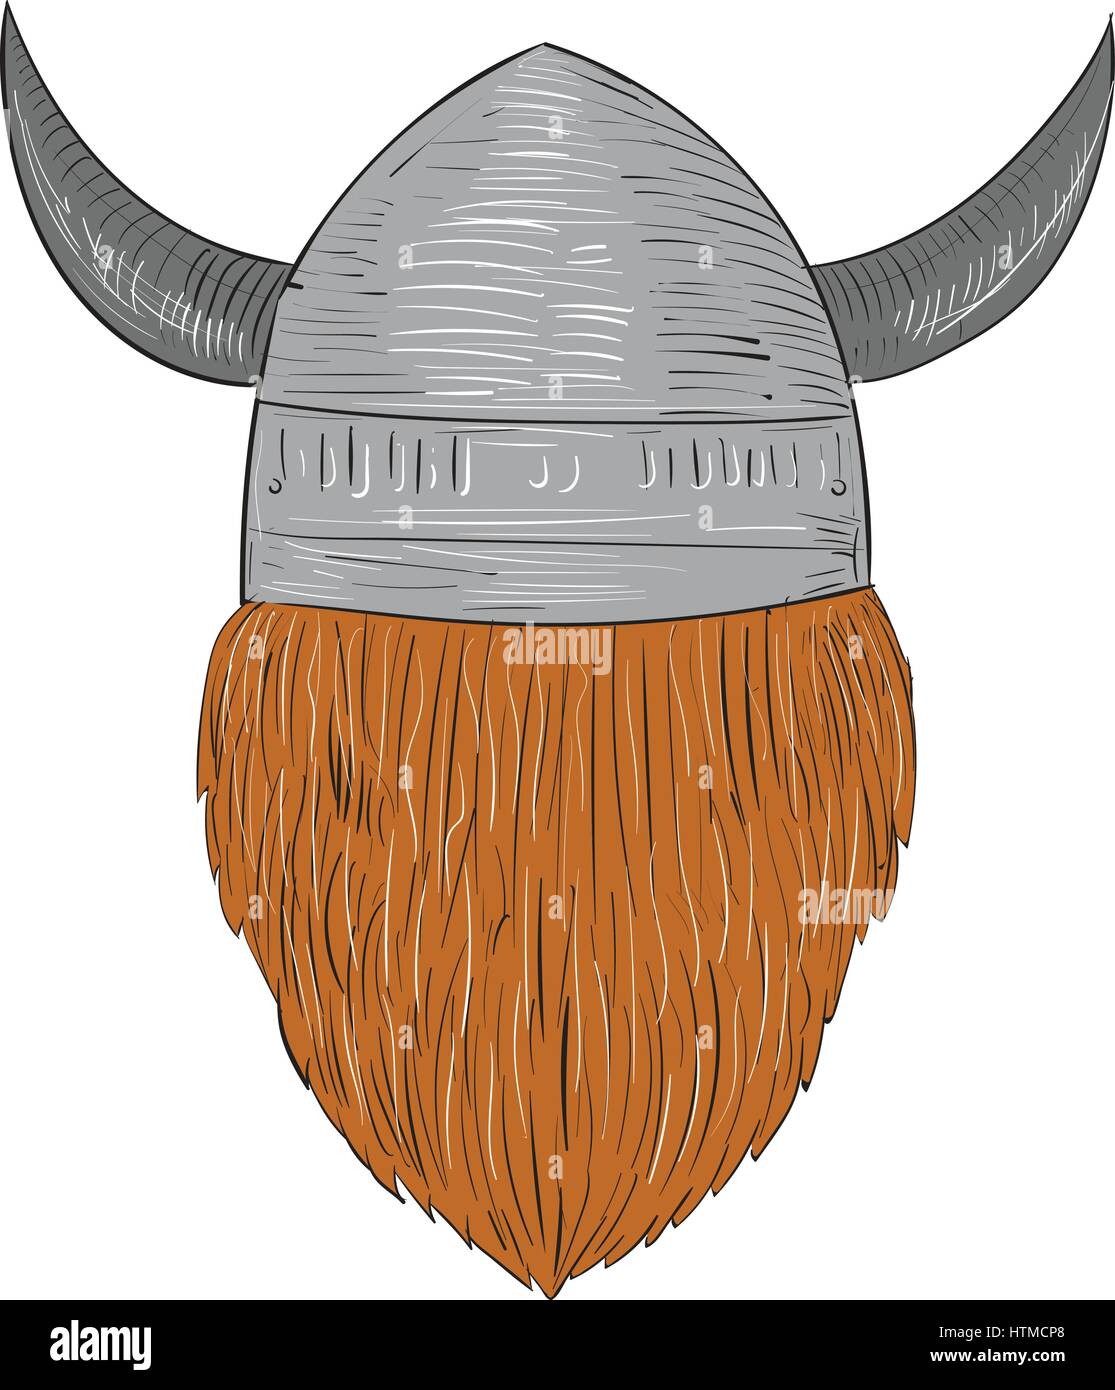 Style croquis dessin illustration d'un norseman guerrier viking raider chef barbare portant des casques à cornes vu de l'ensemble arrière sur blanc isolé Illustration de Vecteur